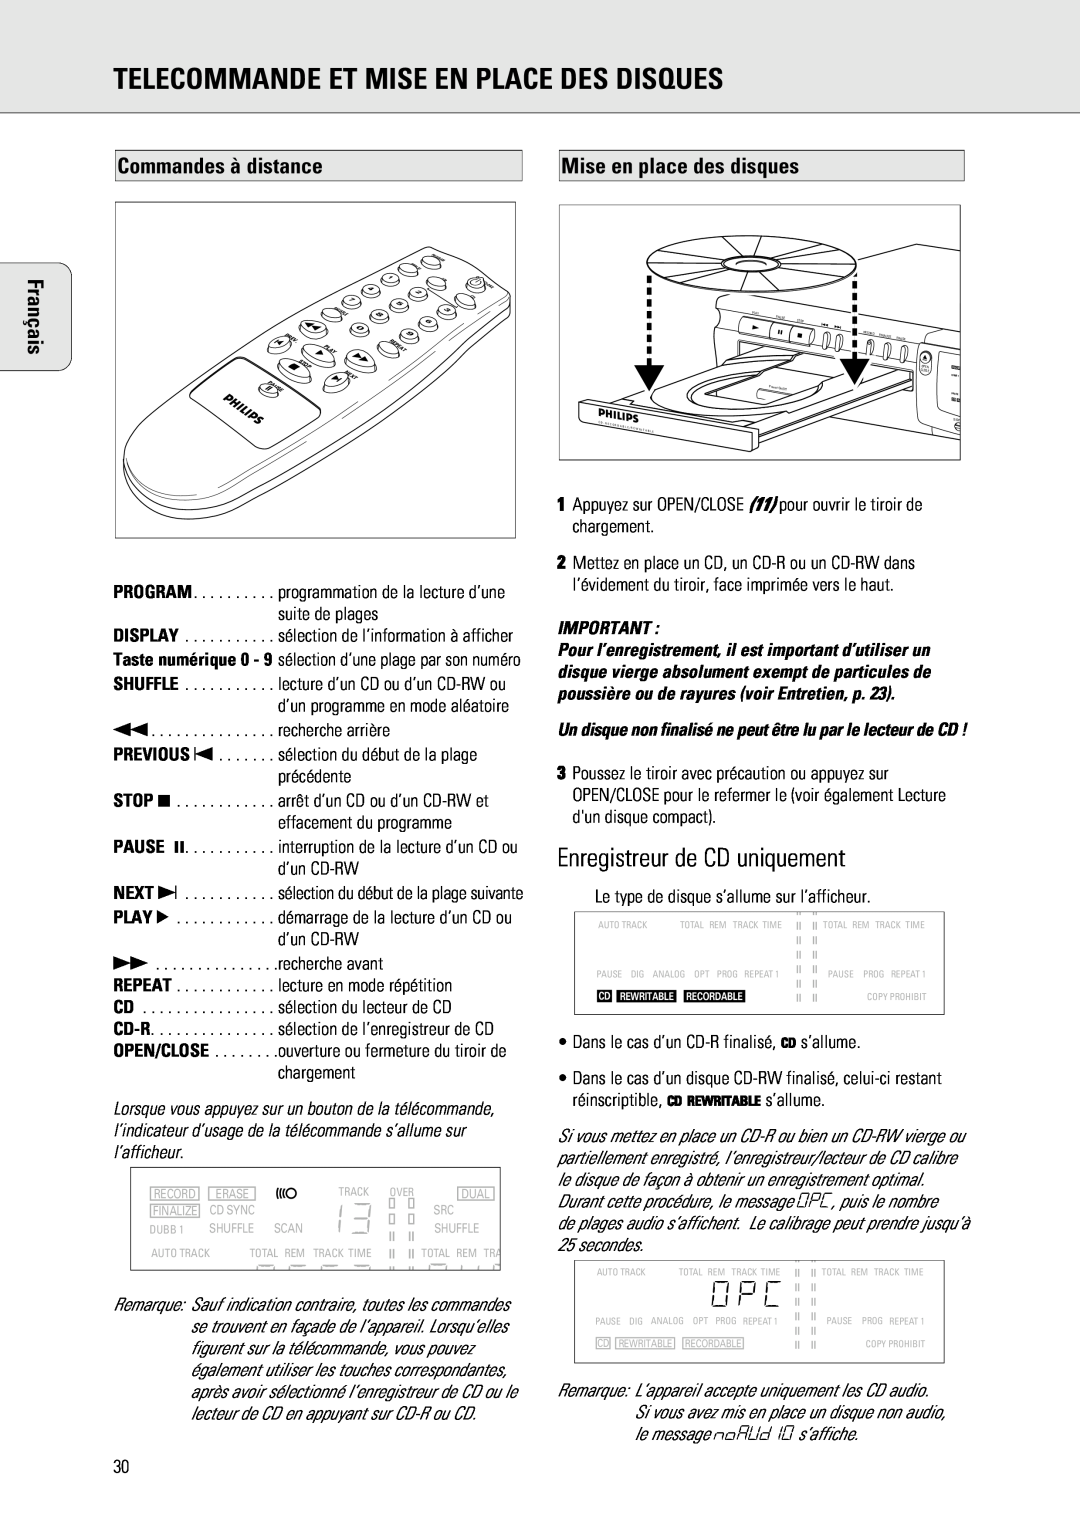 Philips 765 manual Telecommande Et Mise En Place Des Disques, Enregistreur de CD uniquement, Commandes à distance, Français 